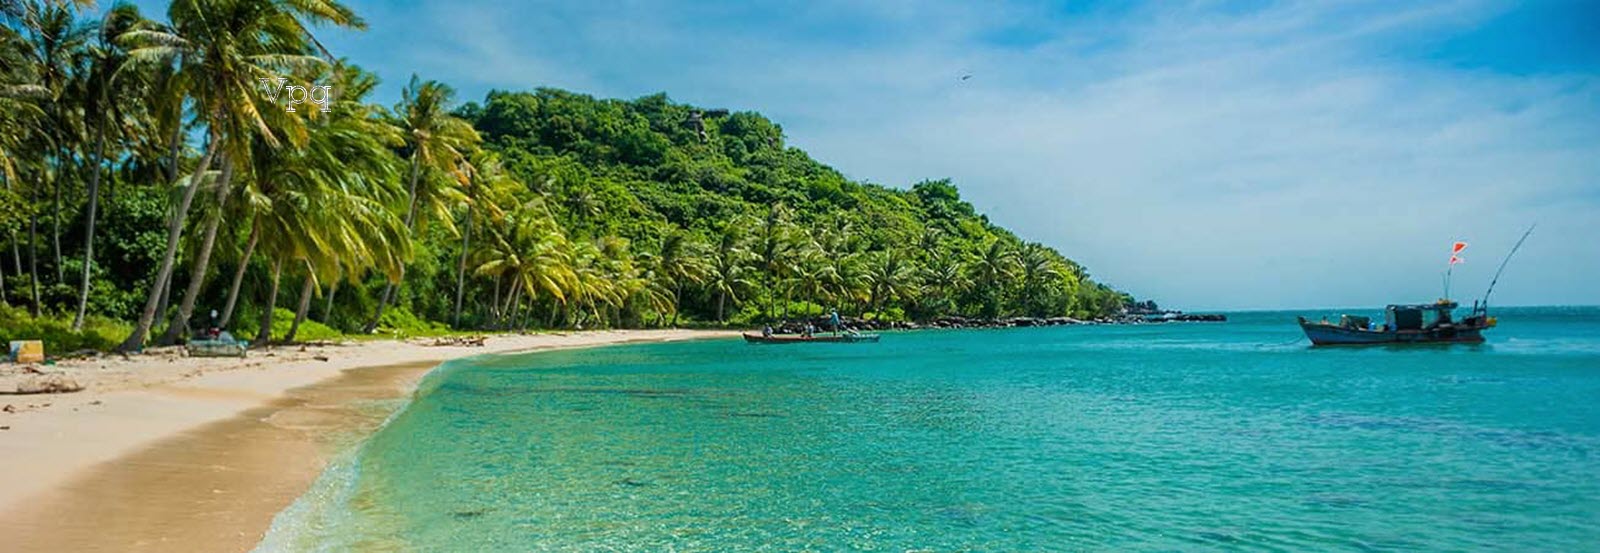 Bãi Kem Phú Quốc - Top 15 bãi biển đẹp nhất hành tinh